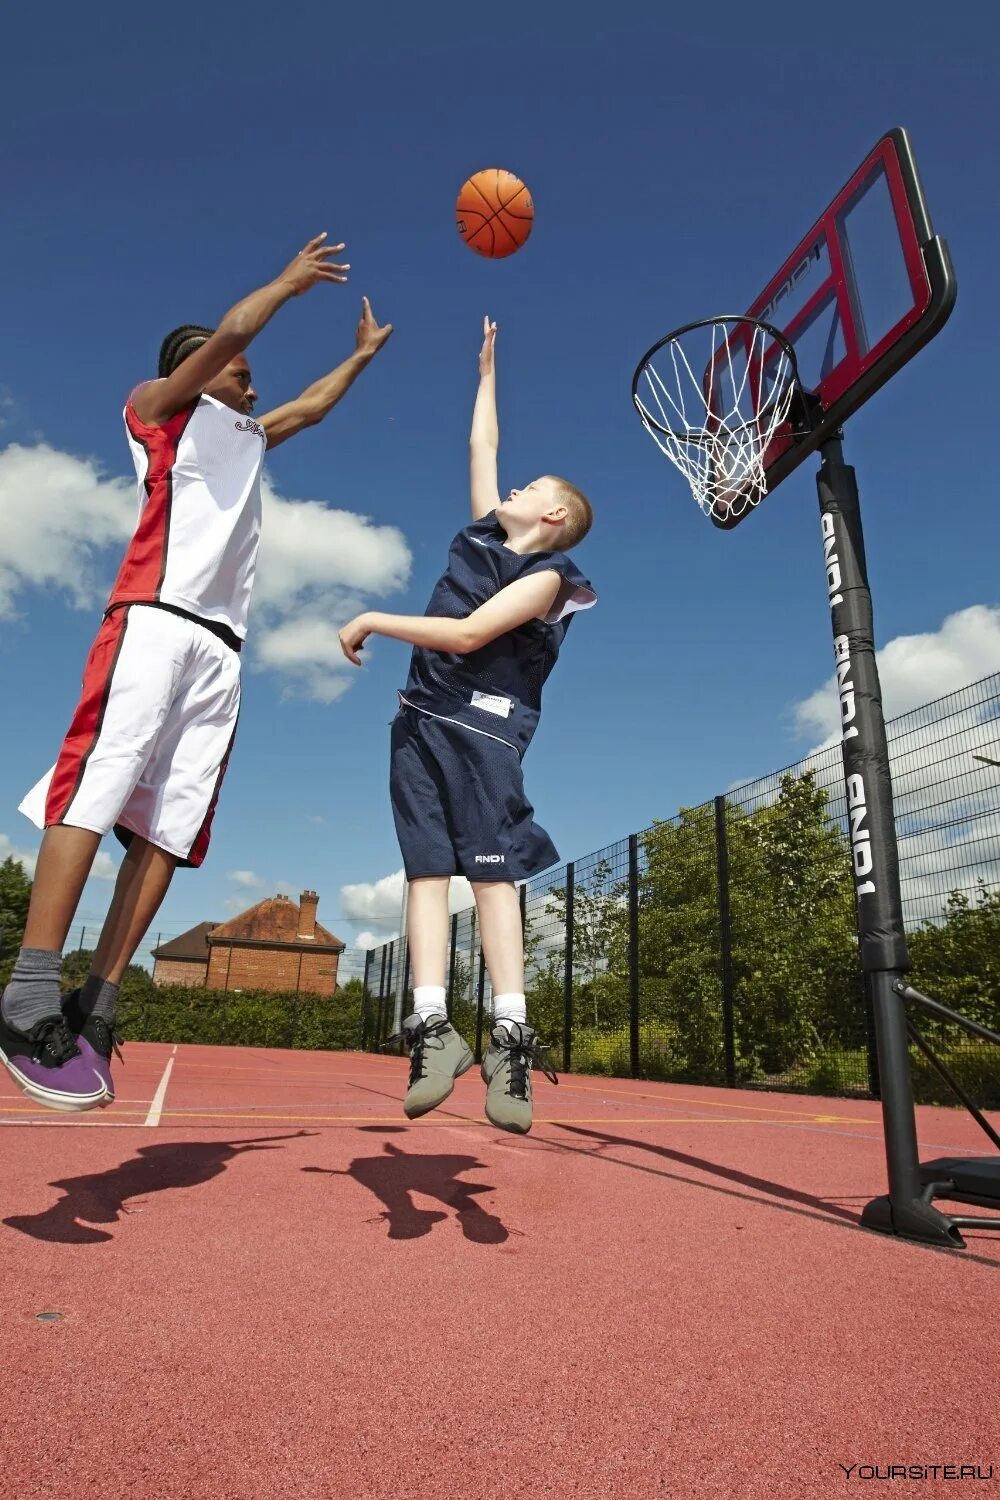 Баскетбол. Спортивные игры баскетбол. Детский баскетбол. Человек играющий в баскетбол.